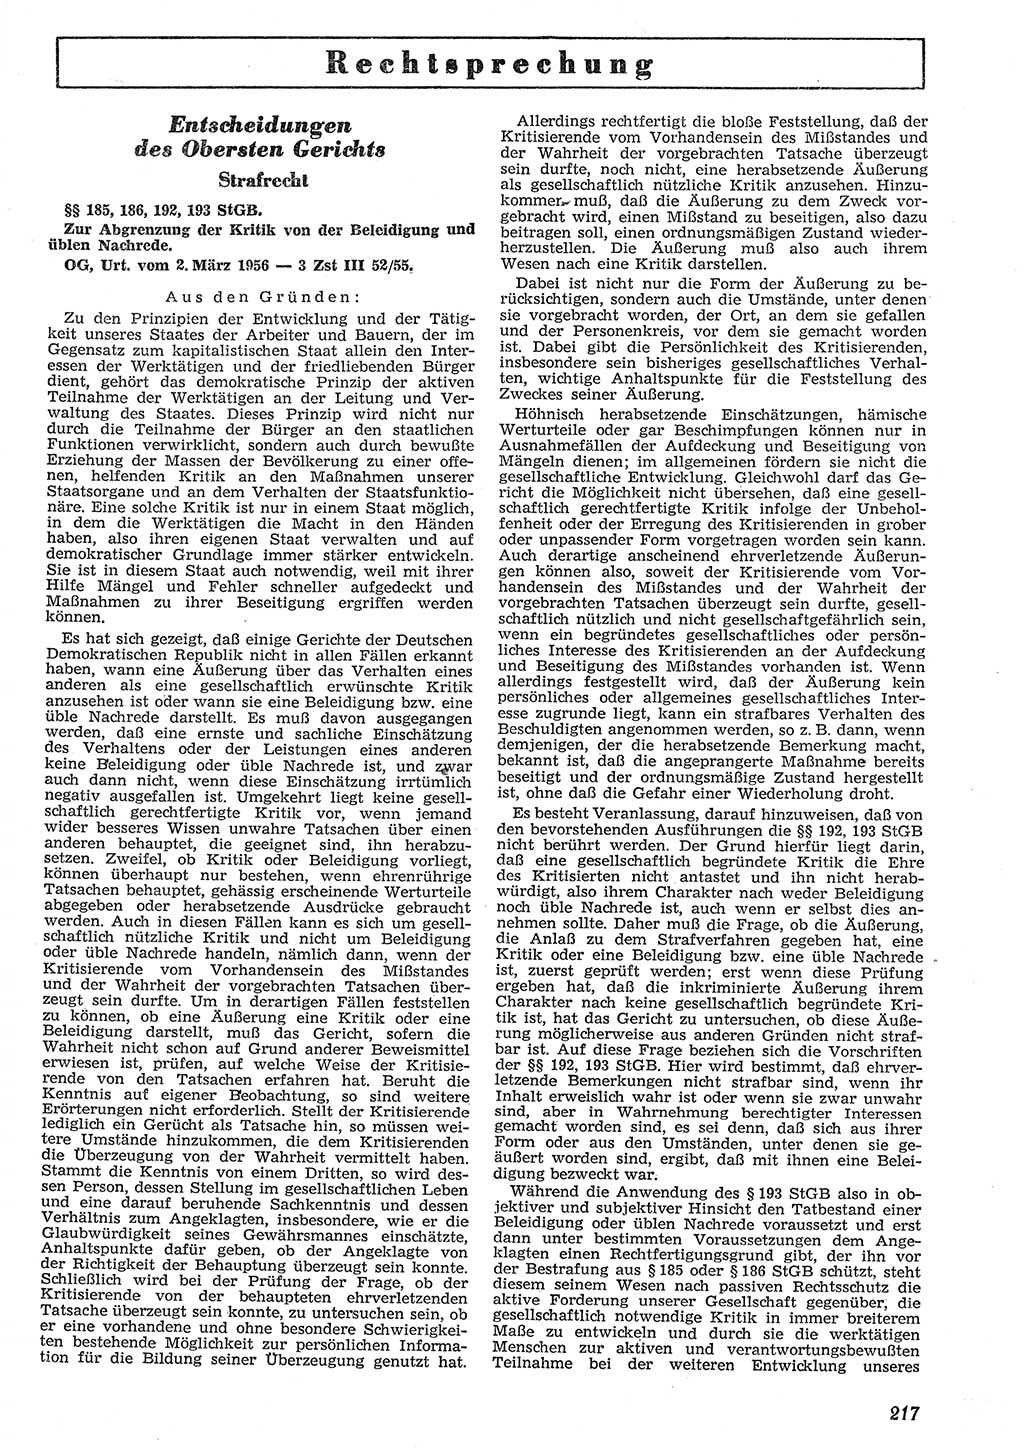 Neue Justiz (NJ), Zeitschrift für Recht und Rechtswissenschaft [Deutsche Demokratische Republik (DDR)], 10. Jahrgang 1956, Seite 217 (NJ DDR 1956, S. 217)